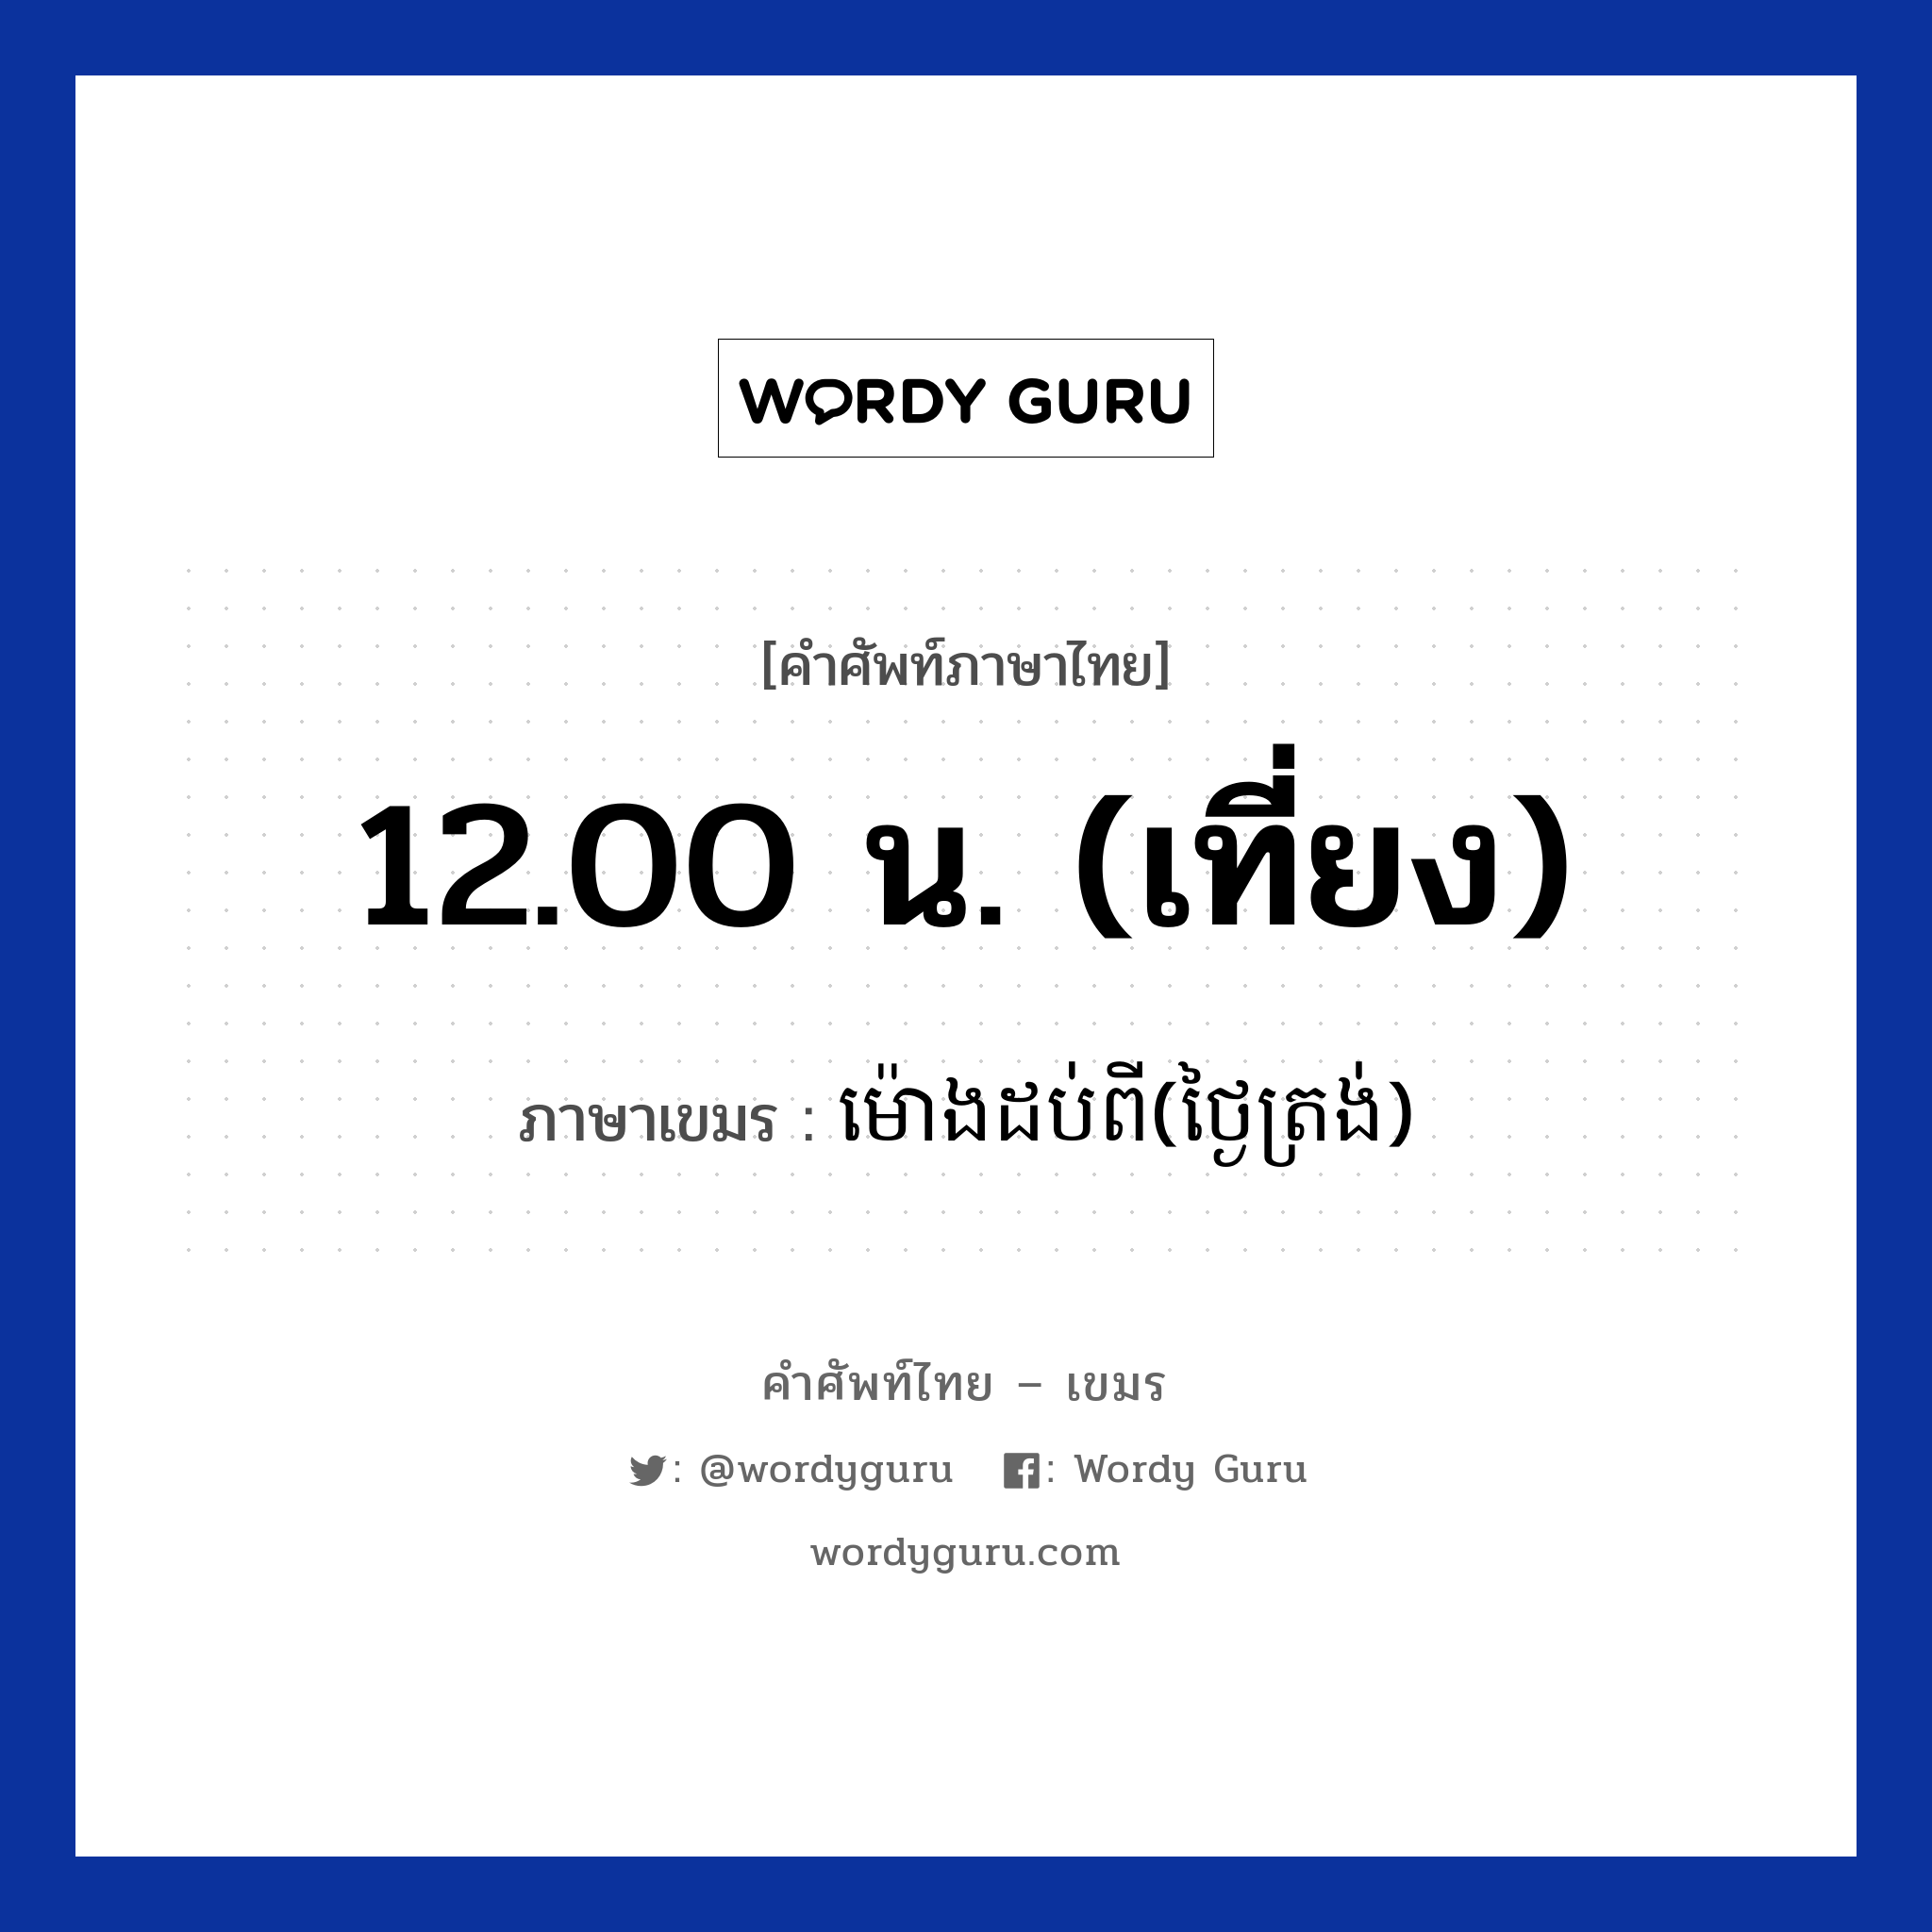 12.00 น. (เที่ยง) ภาษาเขมรคืออะไร, คำศัพท์ภาษาไทย - เขมร 12.00 น. (เที่ยง) ภาษาเขมร ម៉ោងដប់ពី(ថ្ងៃត្រង់) หมวด เวลา Mong dobpii(tngaitrong) หมวด เวลา